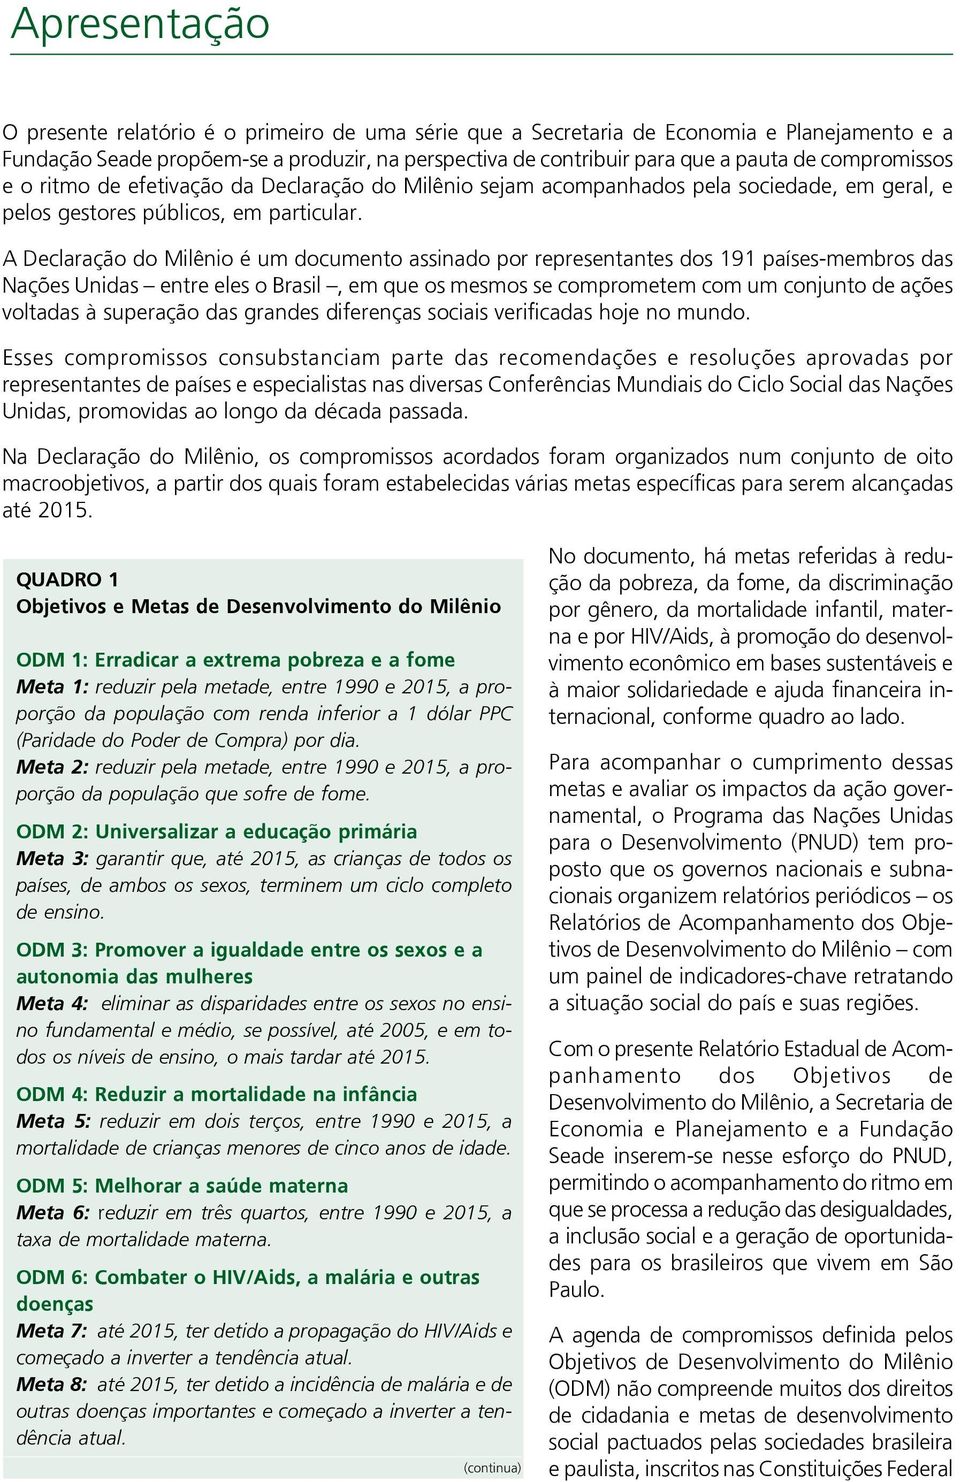 A Declaração do Milênio é um documento assinado por representantes dos 191 países-membros das Nações Unidas entre eles o Brasil, em que os mesmos se comprometem com um conjunto de ações voltadas à